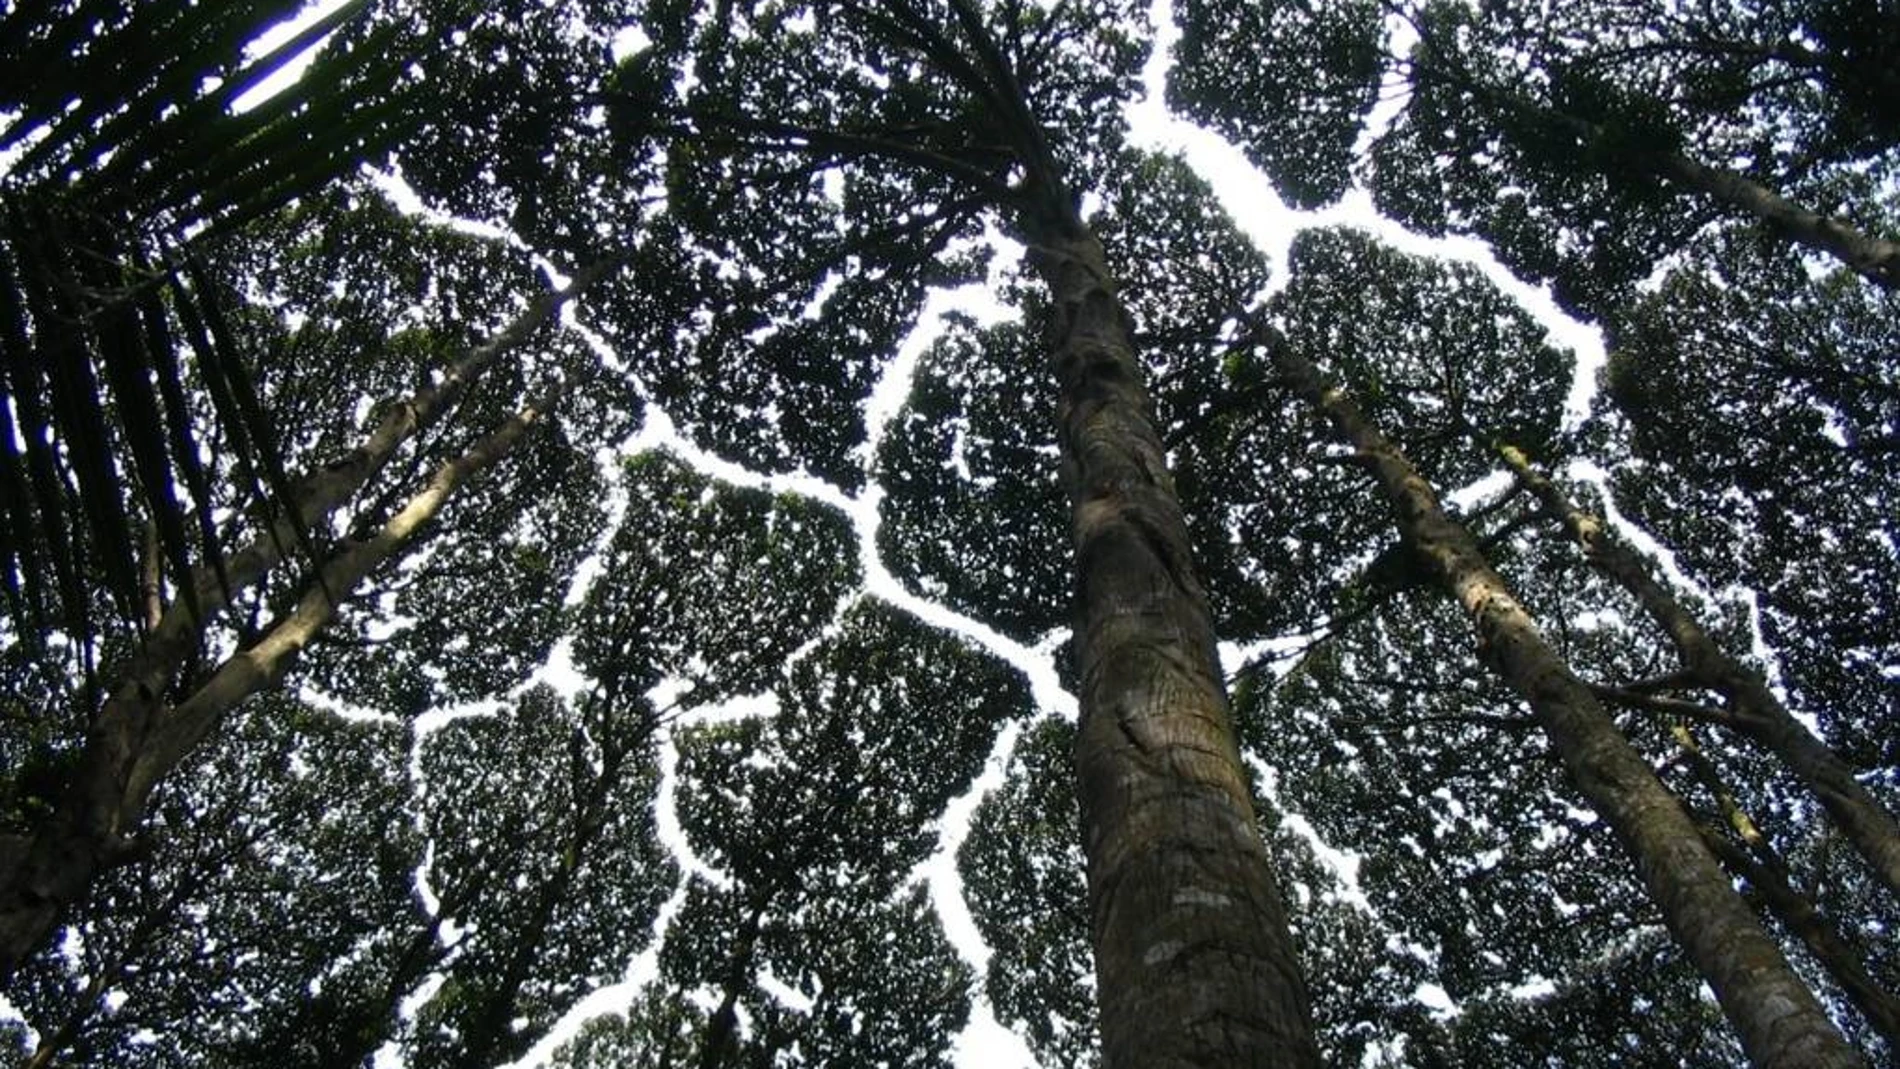 Fotografía de las fisuras de timidez entre las copas de un bosque de Dryobalanops aromatica, en Malasia.